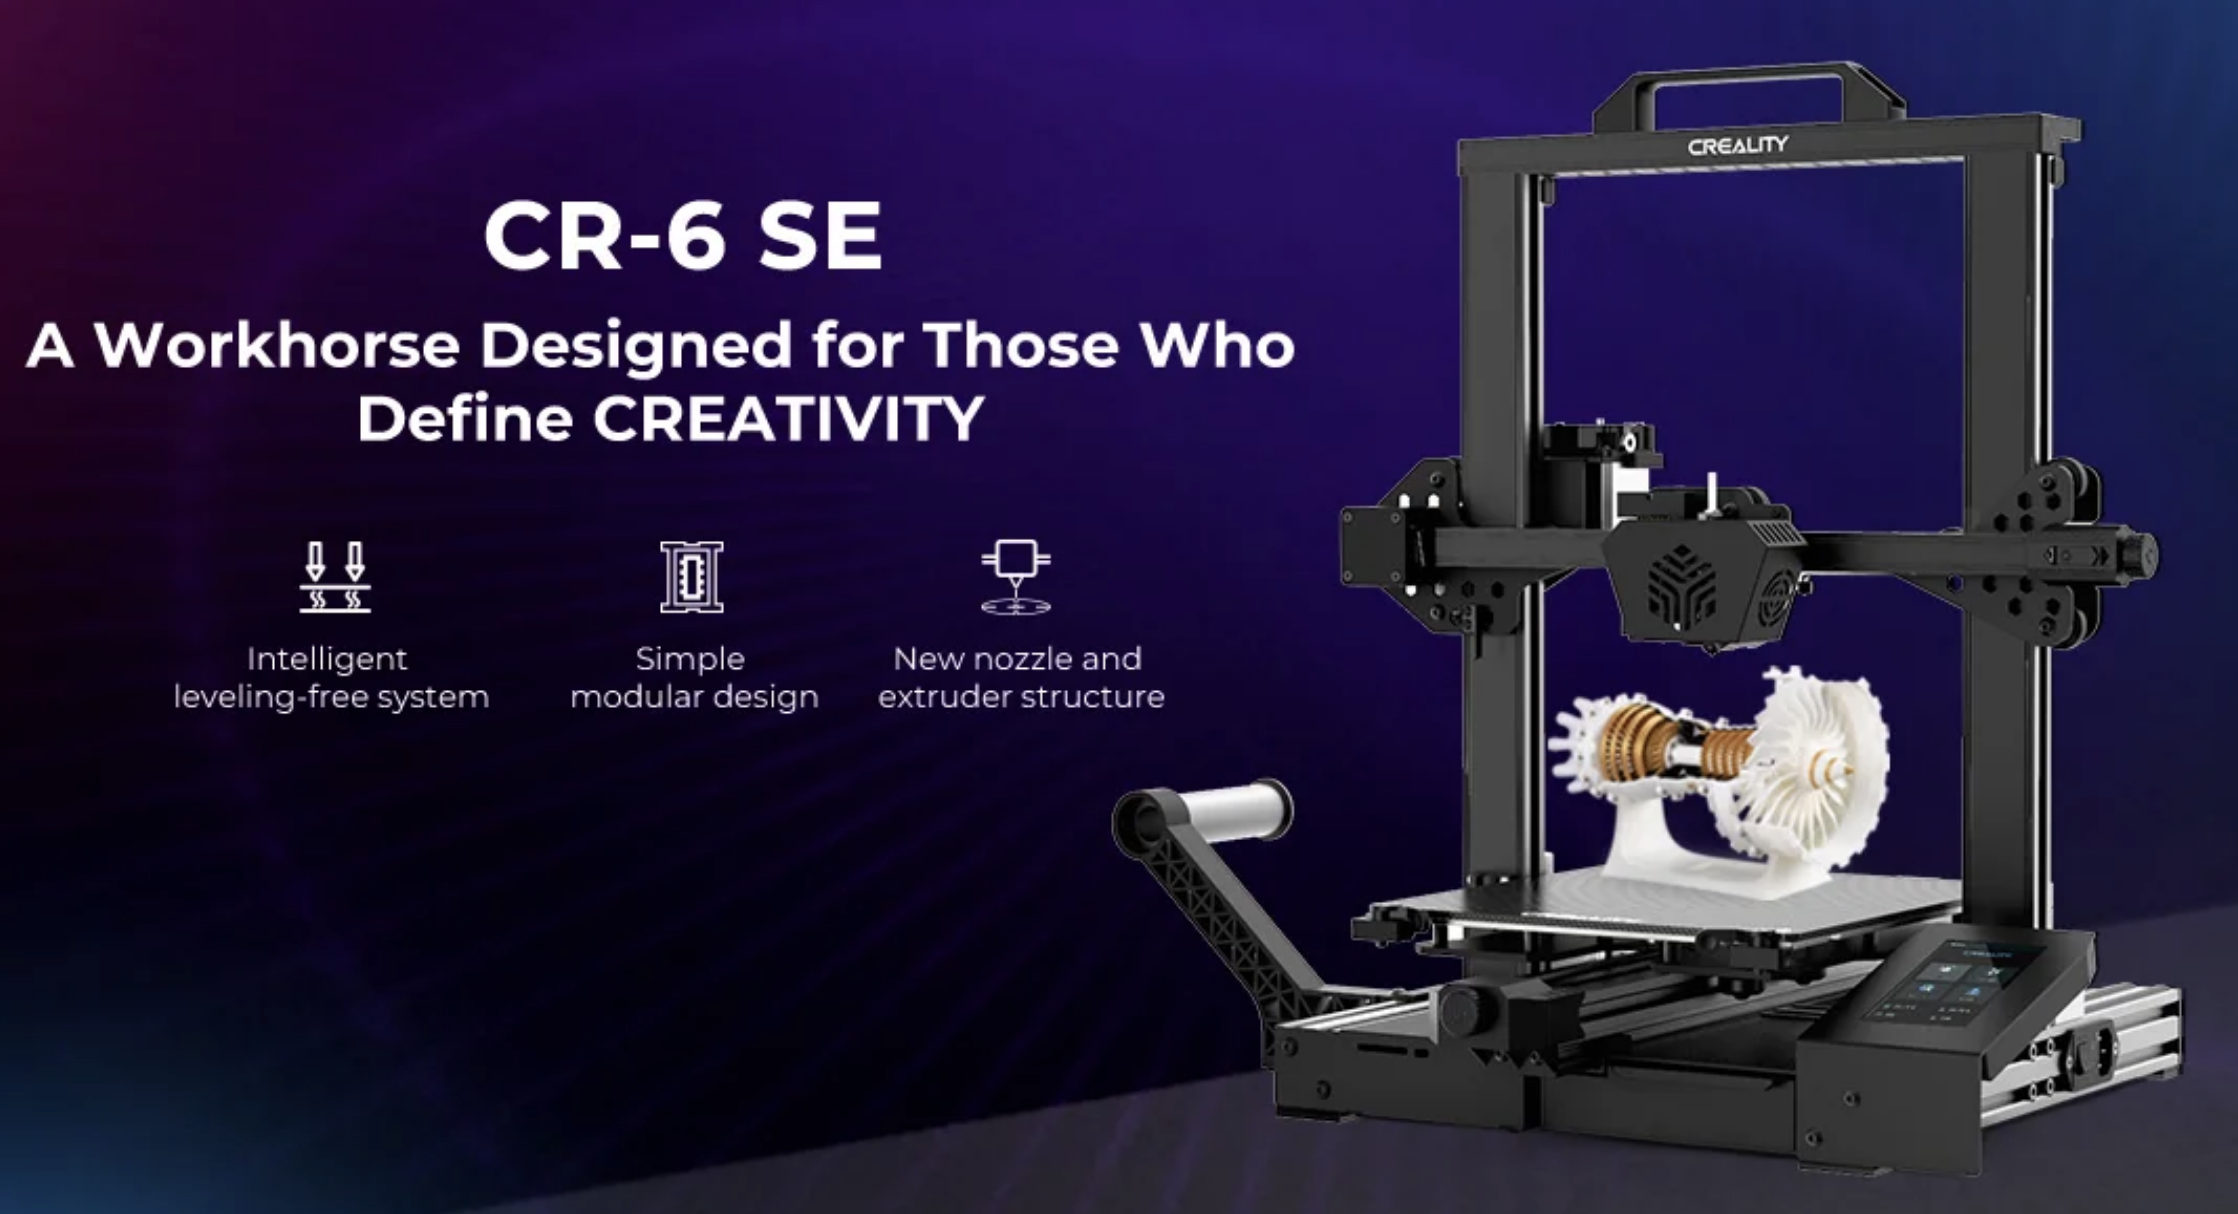 Creality CR-6 SE 3D printer
크리얼리티 CR-6 SE 3D프린터
인텔리전트 지능형 레벨프리 시스템, 새로운 노즐과 익스트루더 스트럭쳐